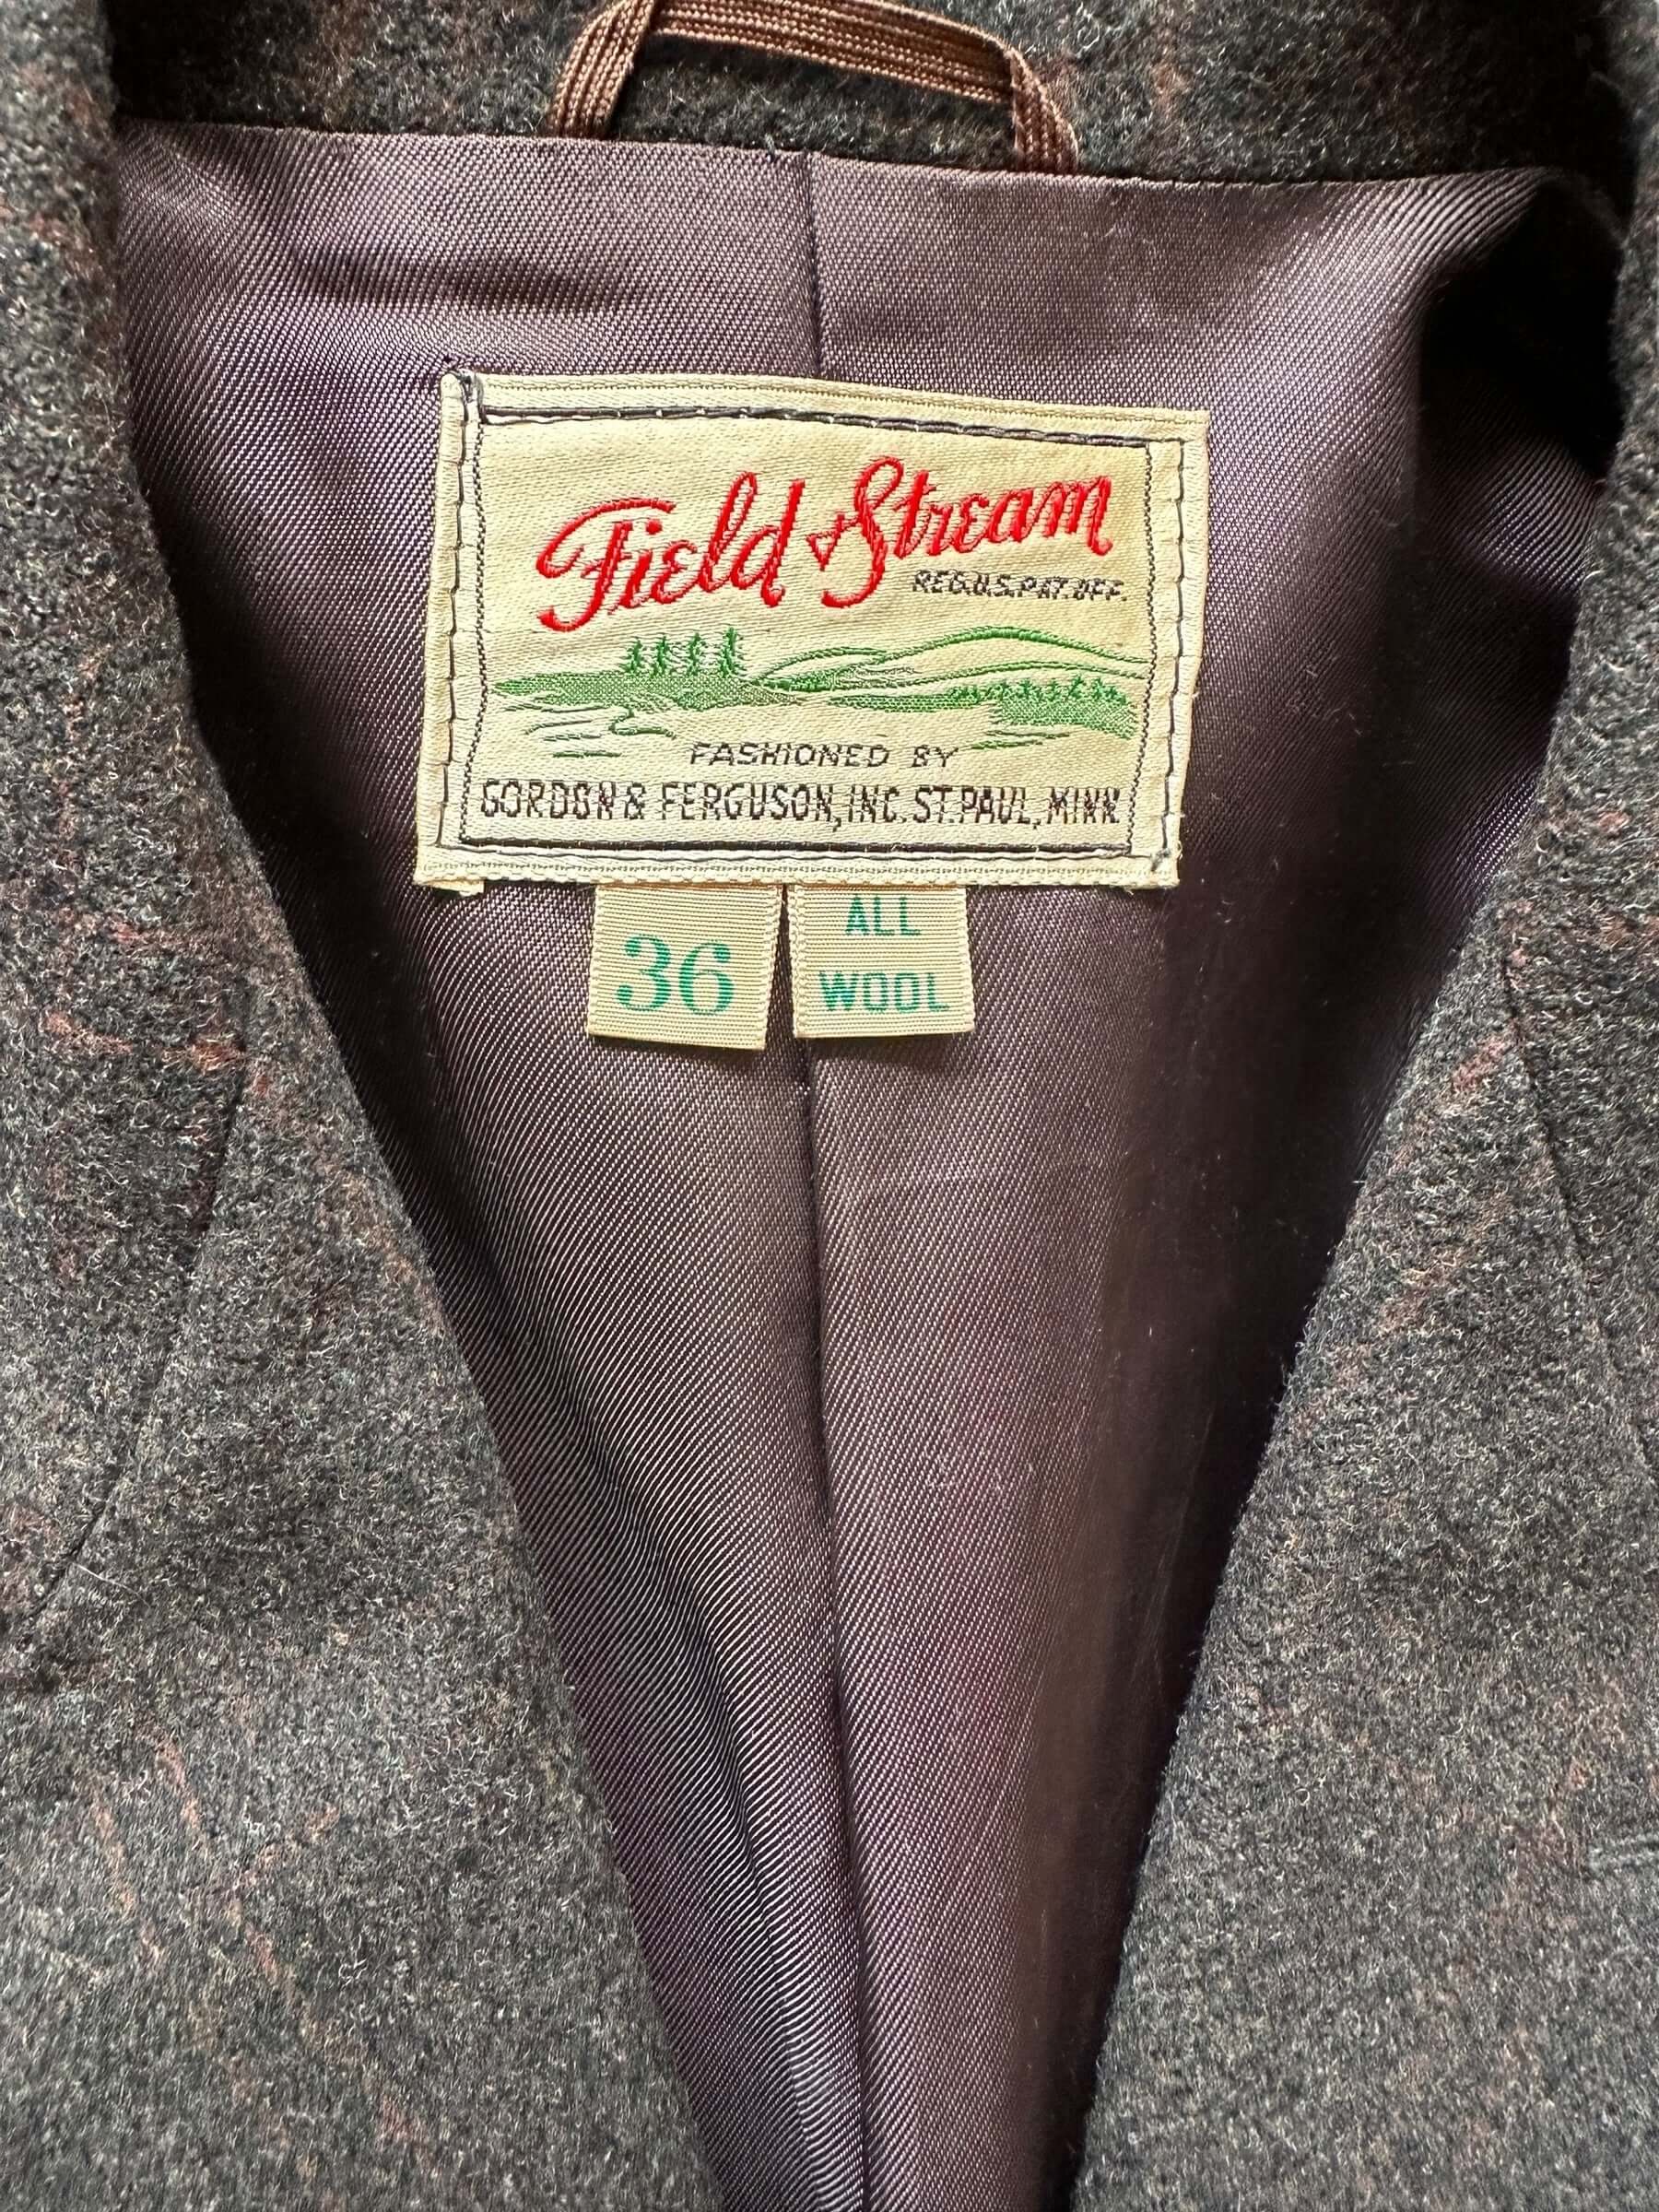 Tag View of Vintage Field & Stream Wool Jacket SZ 36 | Vintage Wool Jacket Seattle  | Seattle Vintage Clothing